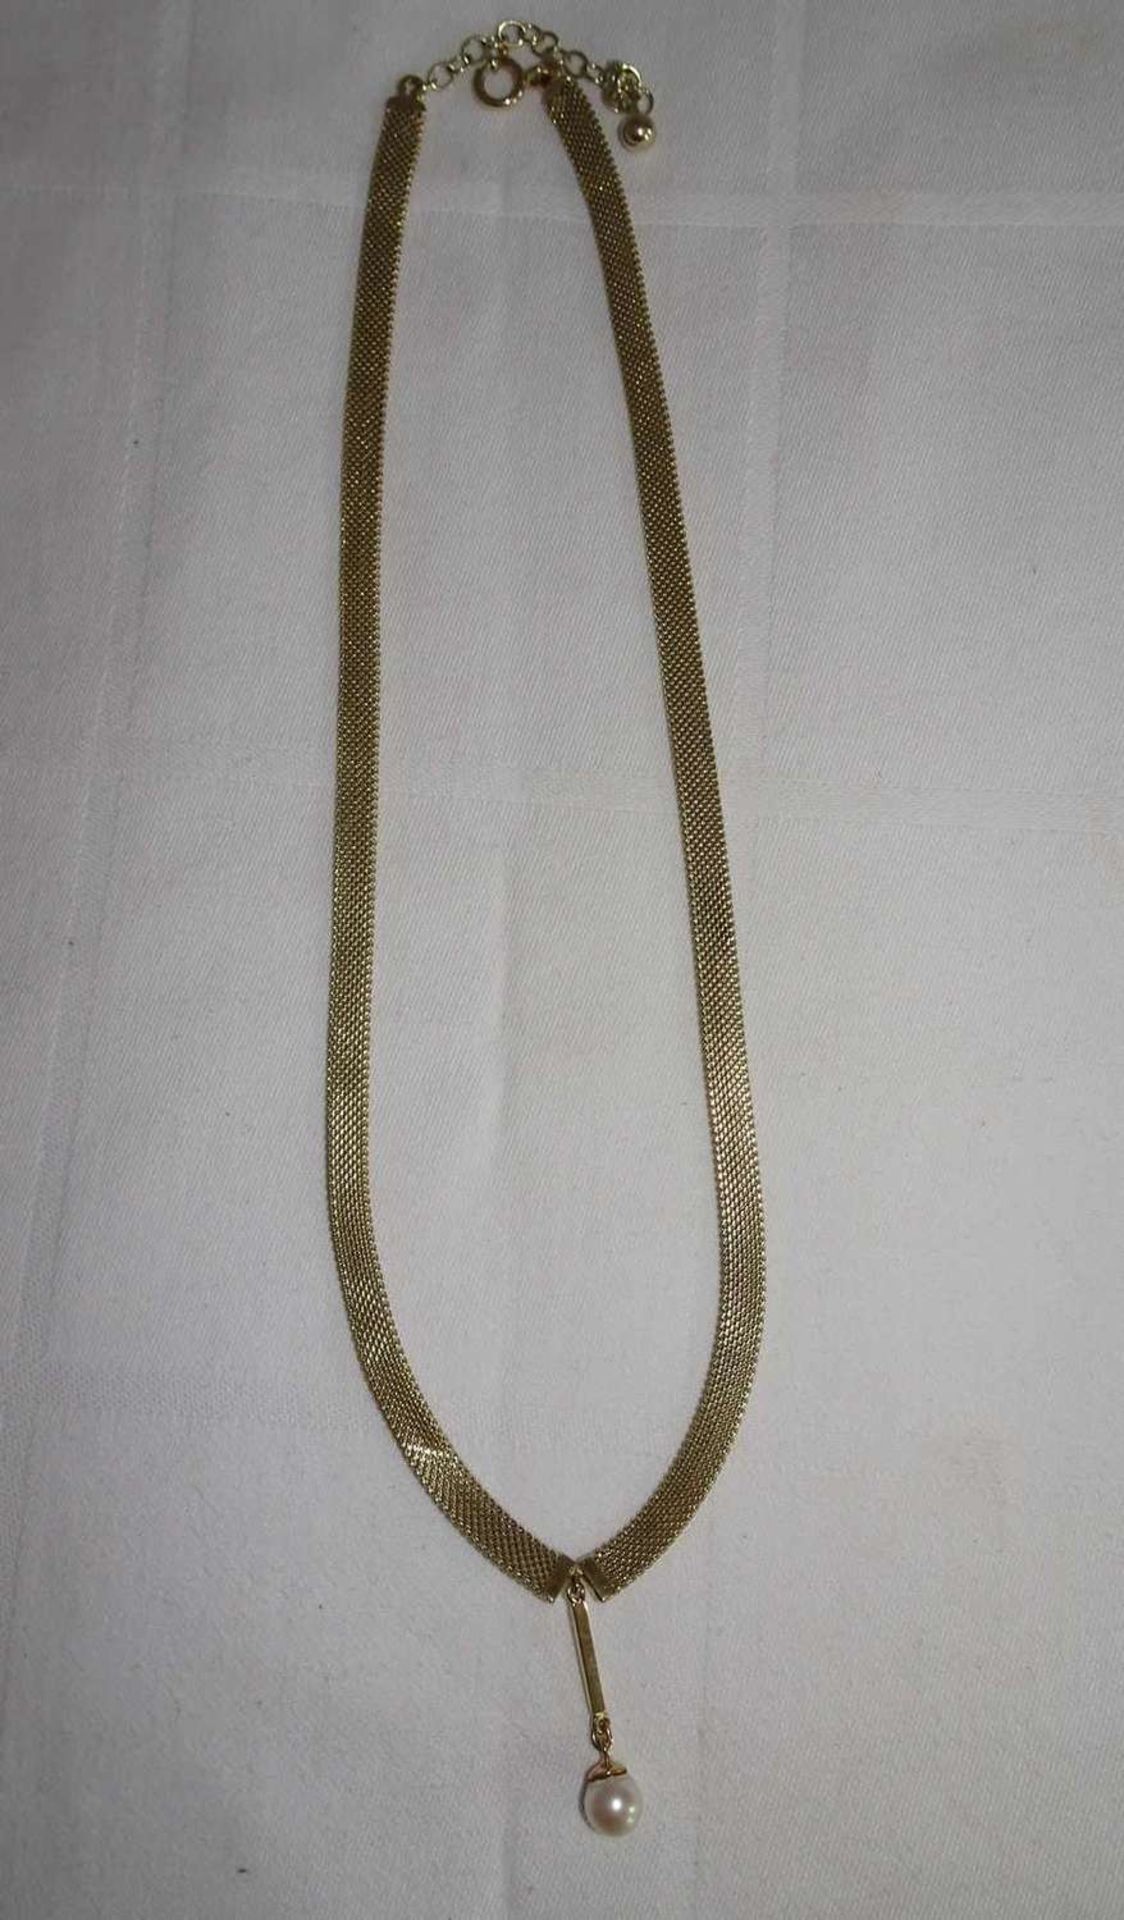 Collier, 585er Gelbgold, mit Perlabhängung. Länge ca. 45 cm. Gewicht ca. 26,6 gr.